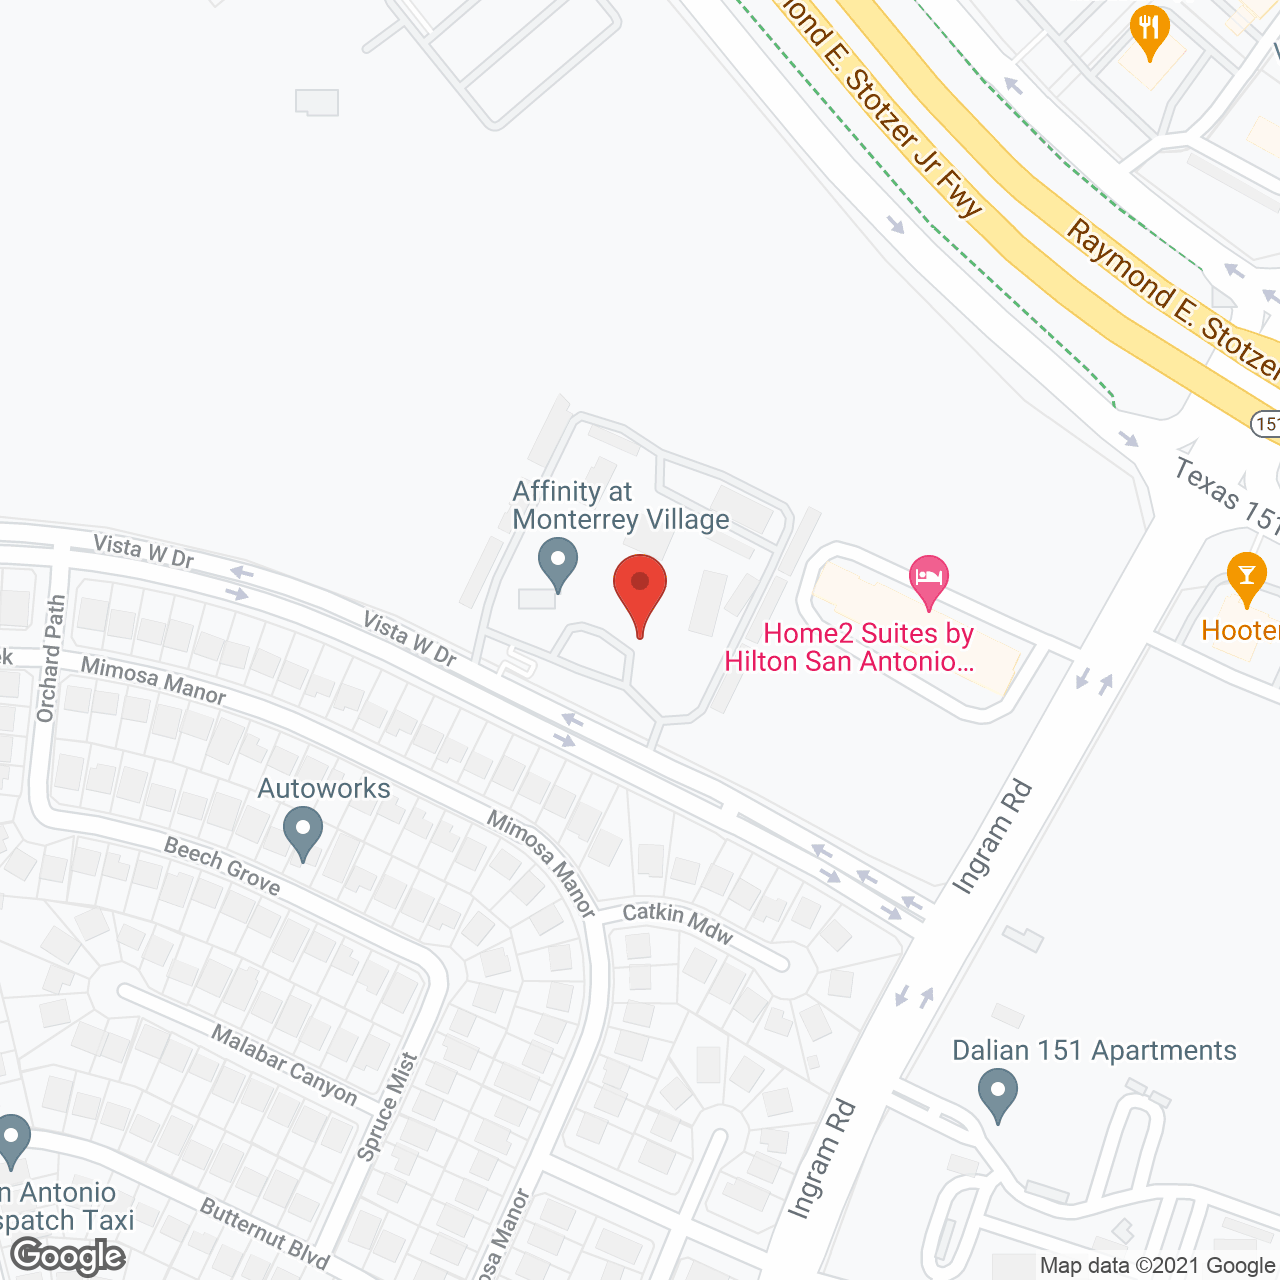 Affinity at Monterrey Village in google map